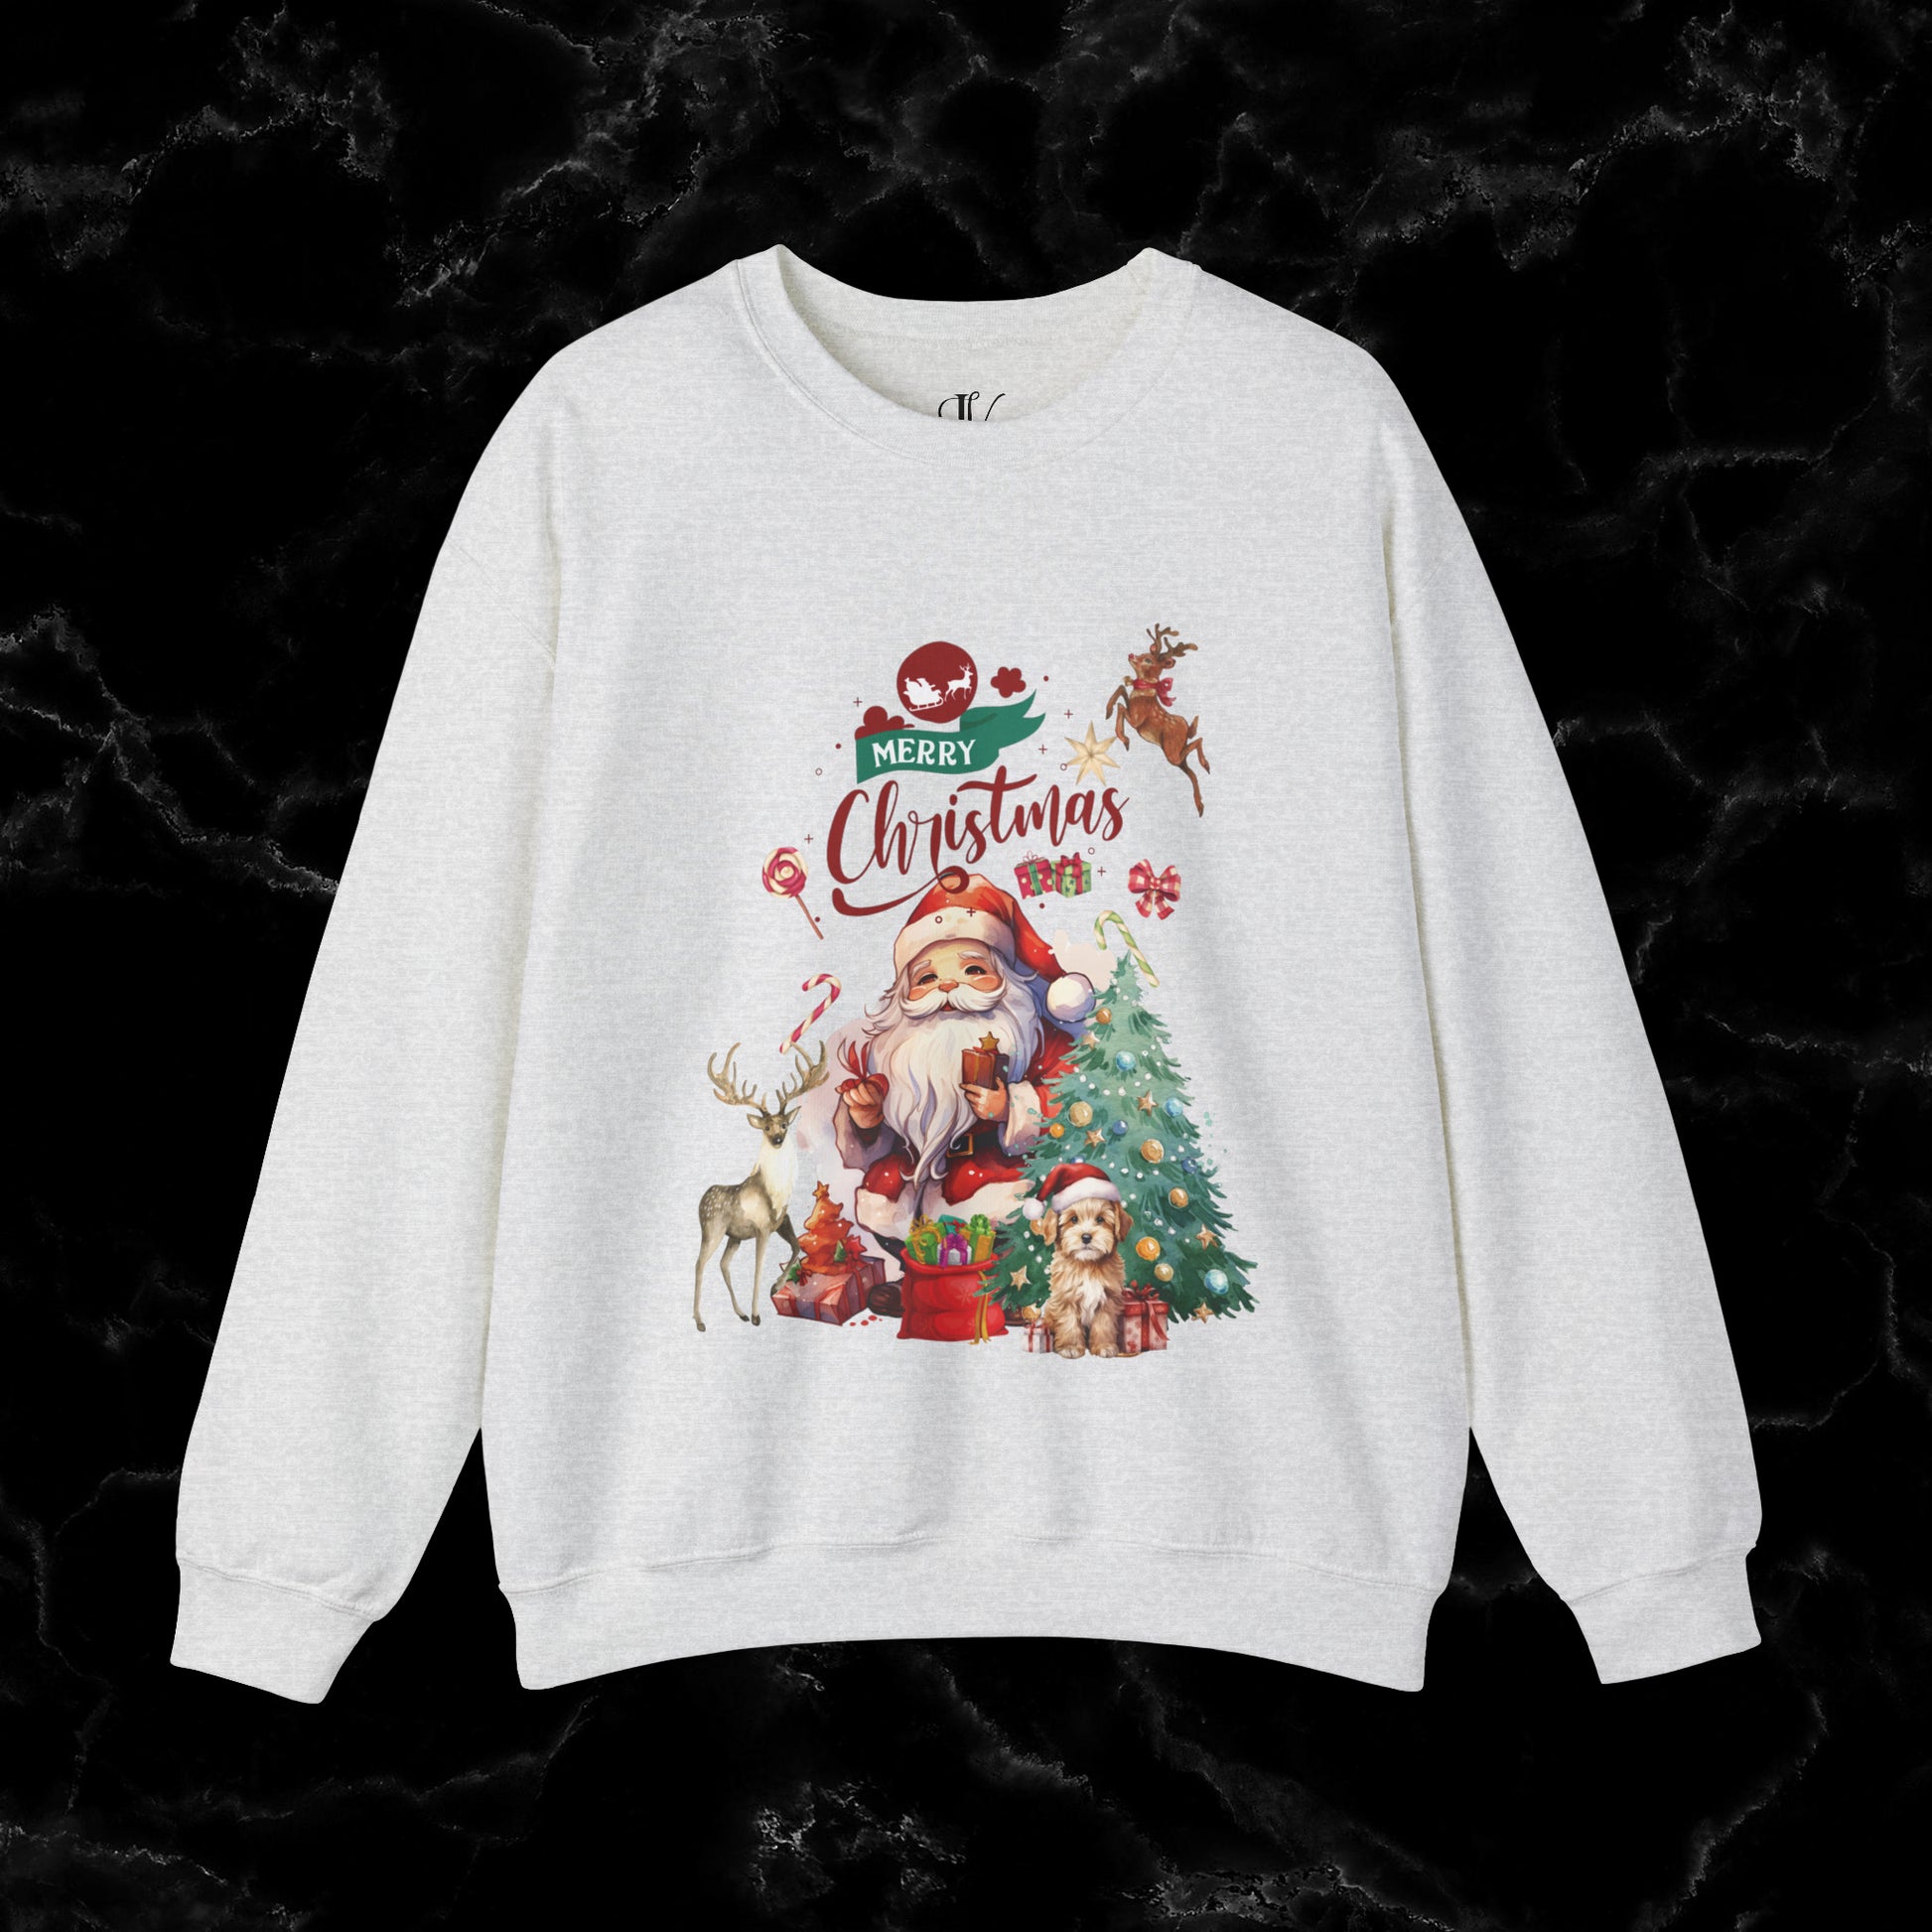 Merry Christmas Sweatshirt | Christmas Shirt - Matching Christmas Shirt - Santa Claus Merry Christmas Sweatshirt - Holiday Gift - Christmas Gift Sweatshirt S Ash 